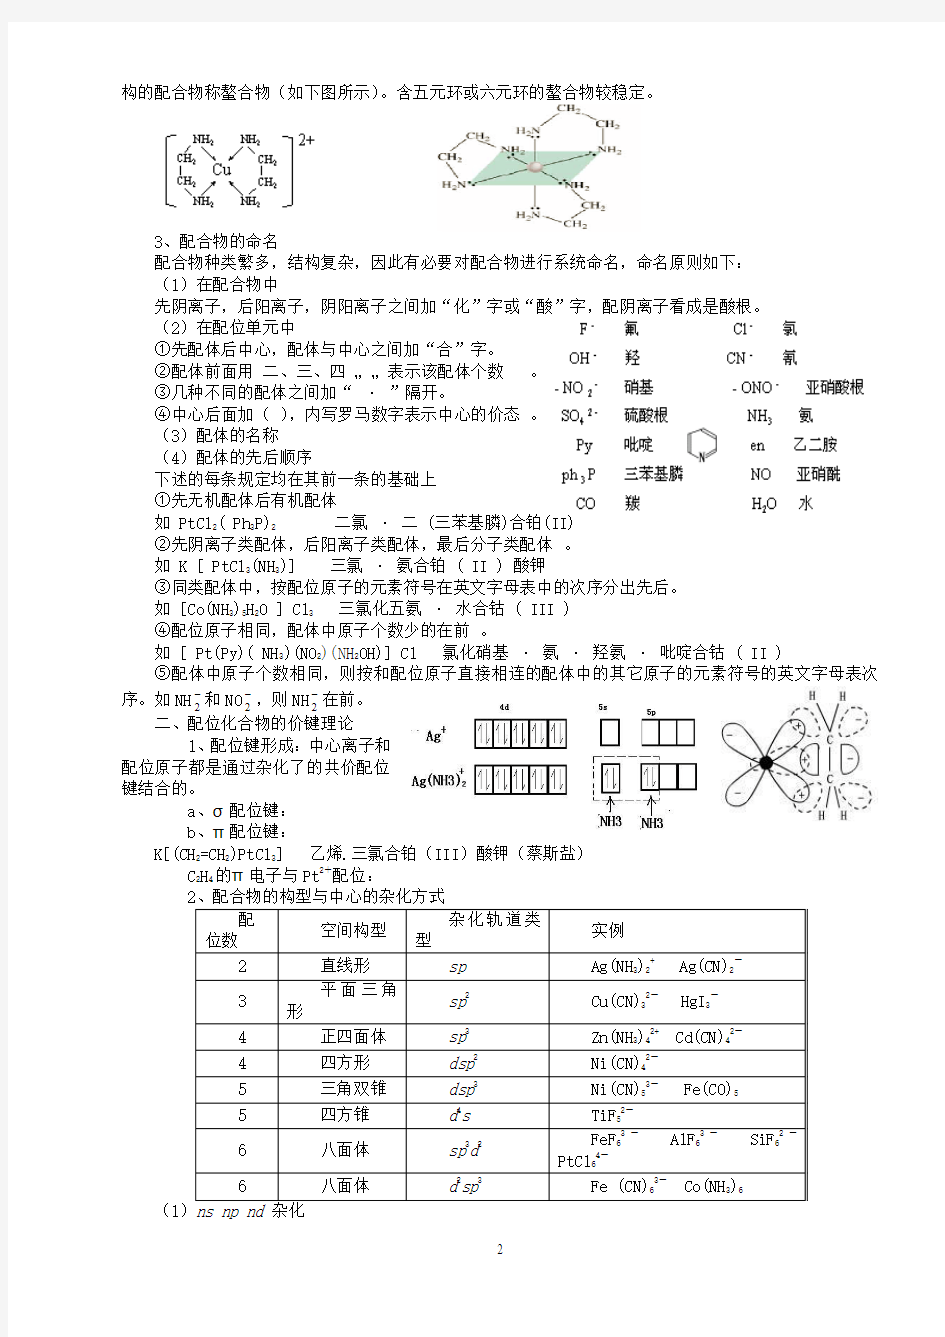 北京市一零一中学2013年高中化学竞赛 第9讲 络合物(配位化合物)化学基础